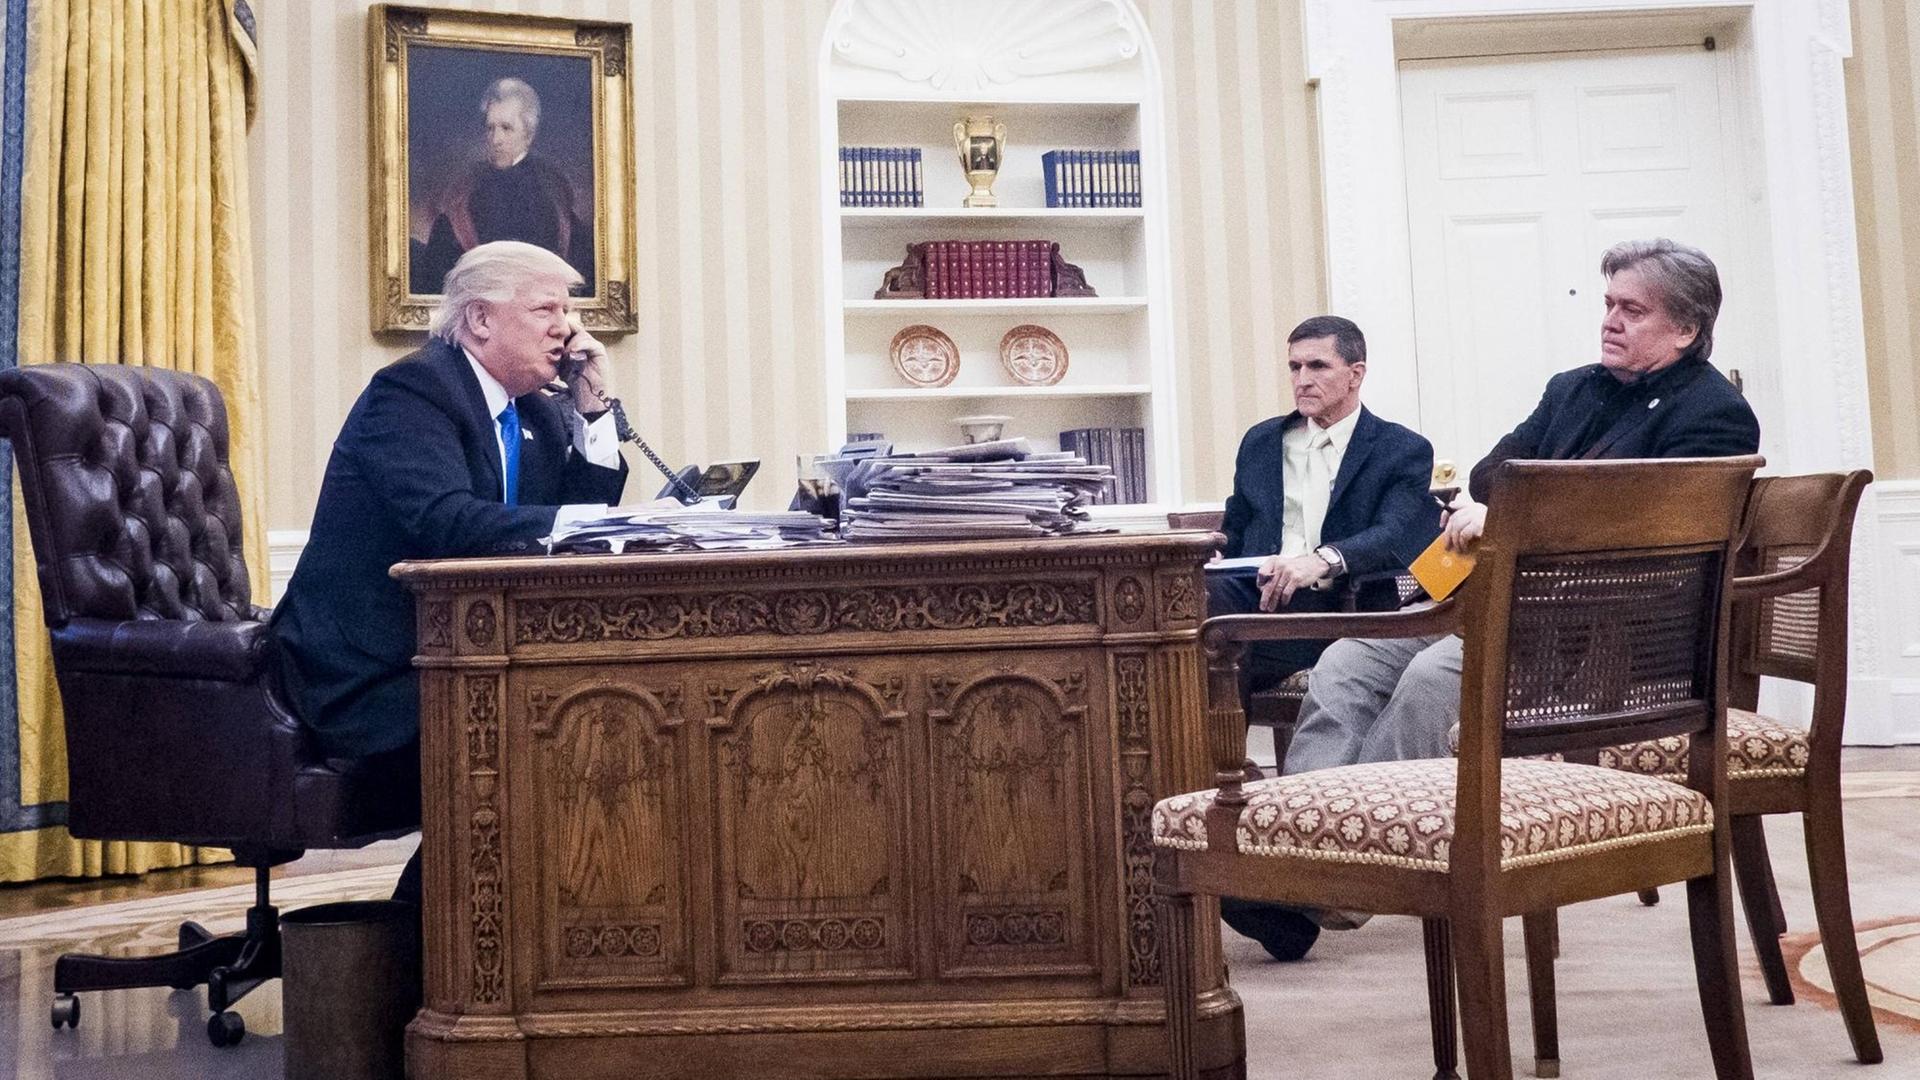 US-Präsident Donald Trump mit dem Nationalen Sicherheitsberater Michael Flynn and Chefberater Steve Bannon im Oval Office im Weißen Haus, Washington. Trump telefoniert mit dem australischen Premier Malcolm Turnbull am 28.1.2017.